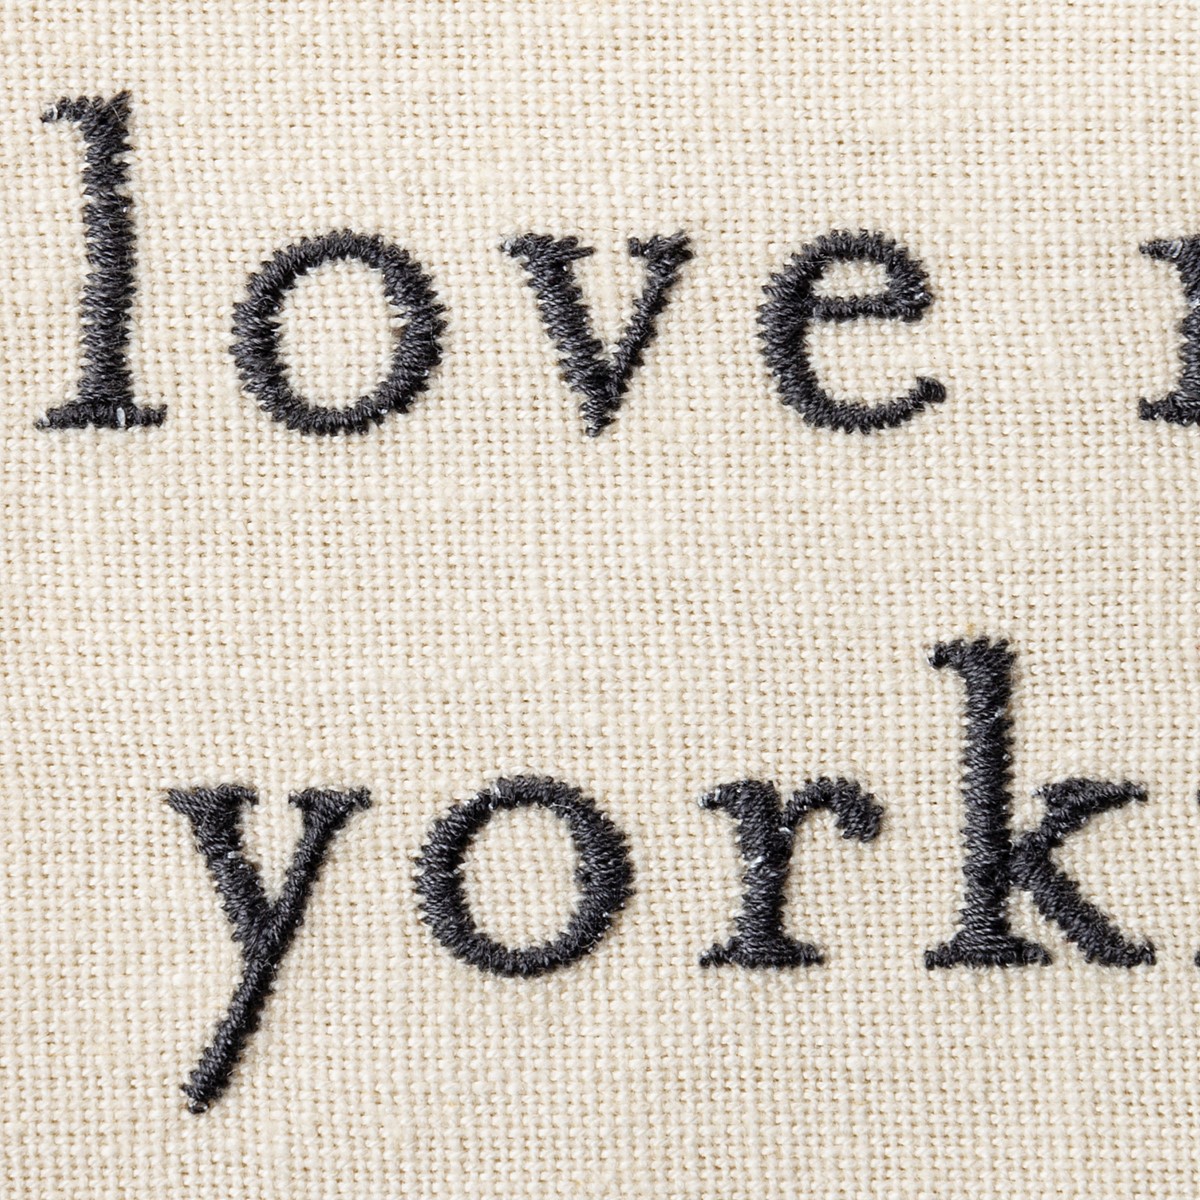 Kitchen Towel - Love My Yorkie - 20" x 26"  - Cotton, Linen